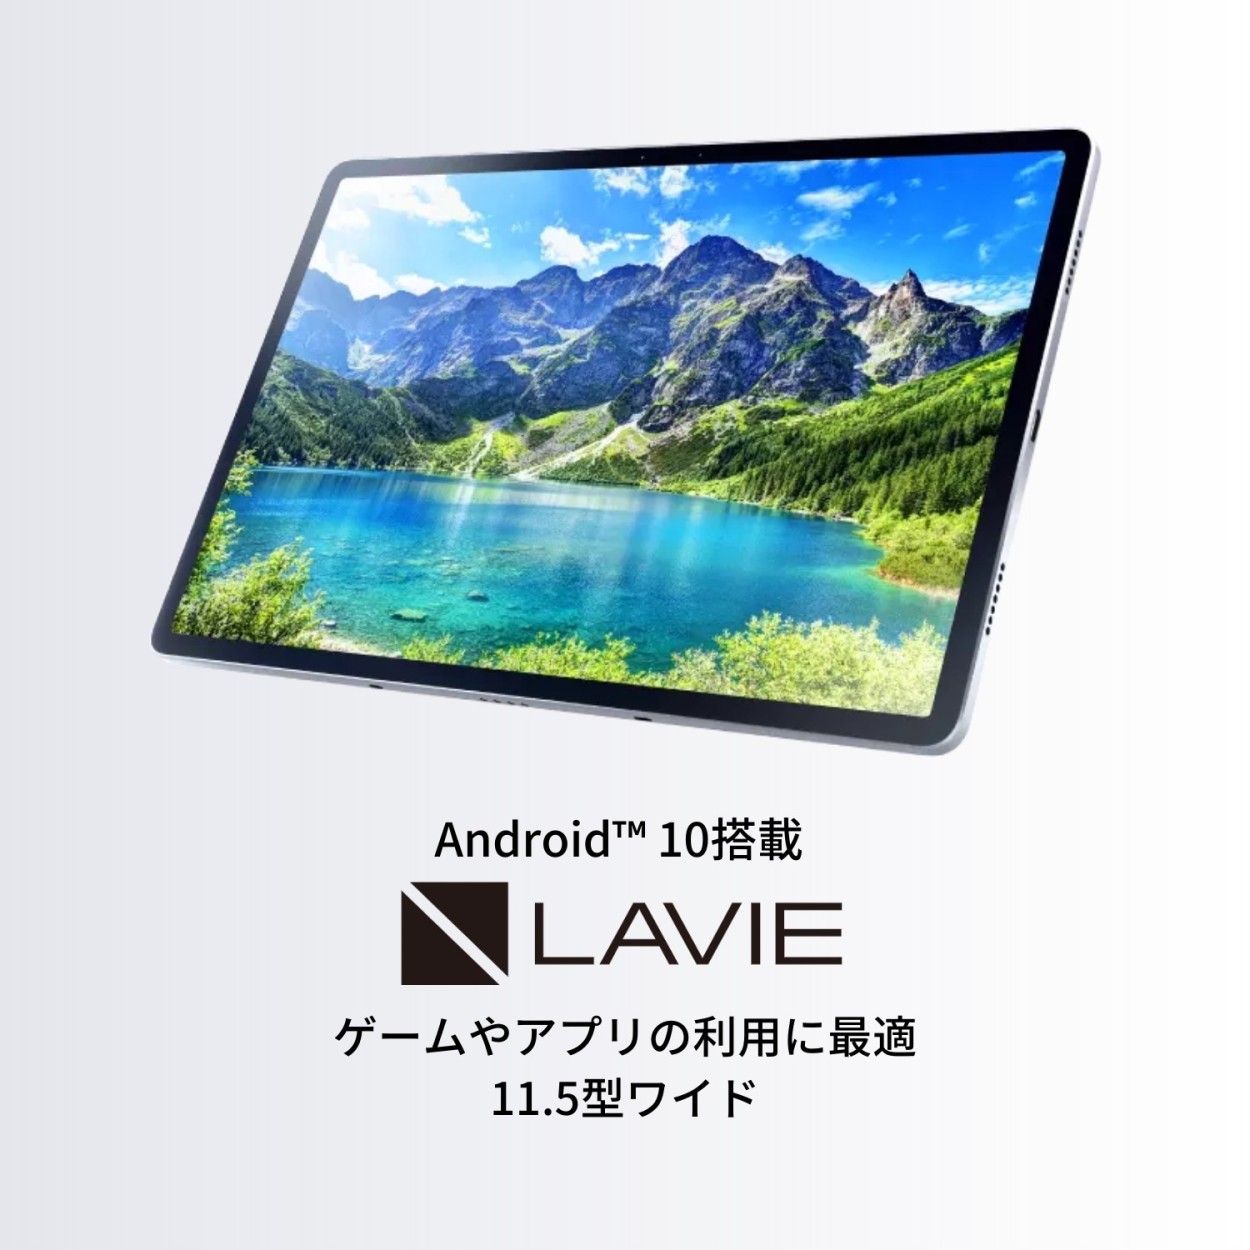 NEC LAVIE T11【Android 10/Snapdragon 730G/6GBメモリ/11.5型ワイド 有機ELディスプレイ/ ロジクールキーボード(ホワイト)】ts NEC Direct - 通販 - PayPayモール